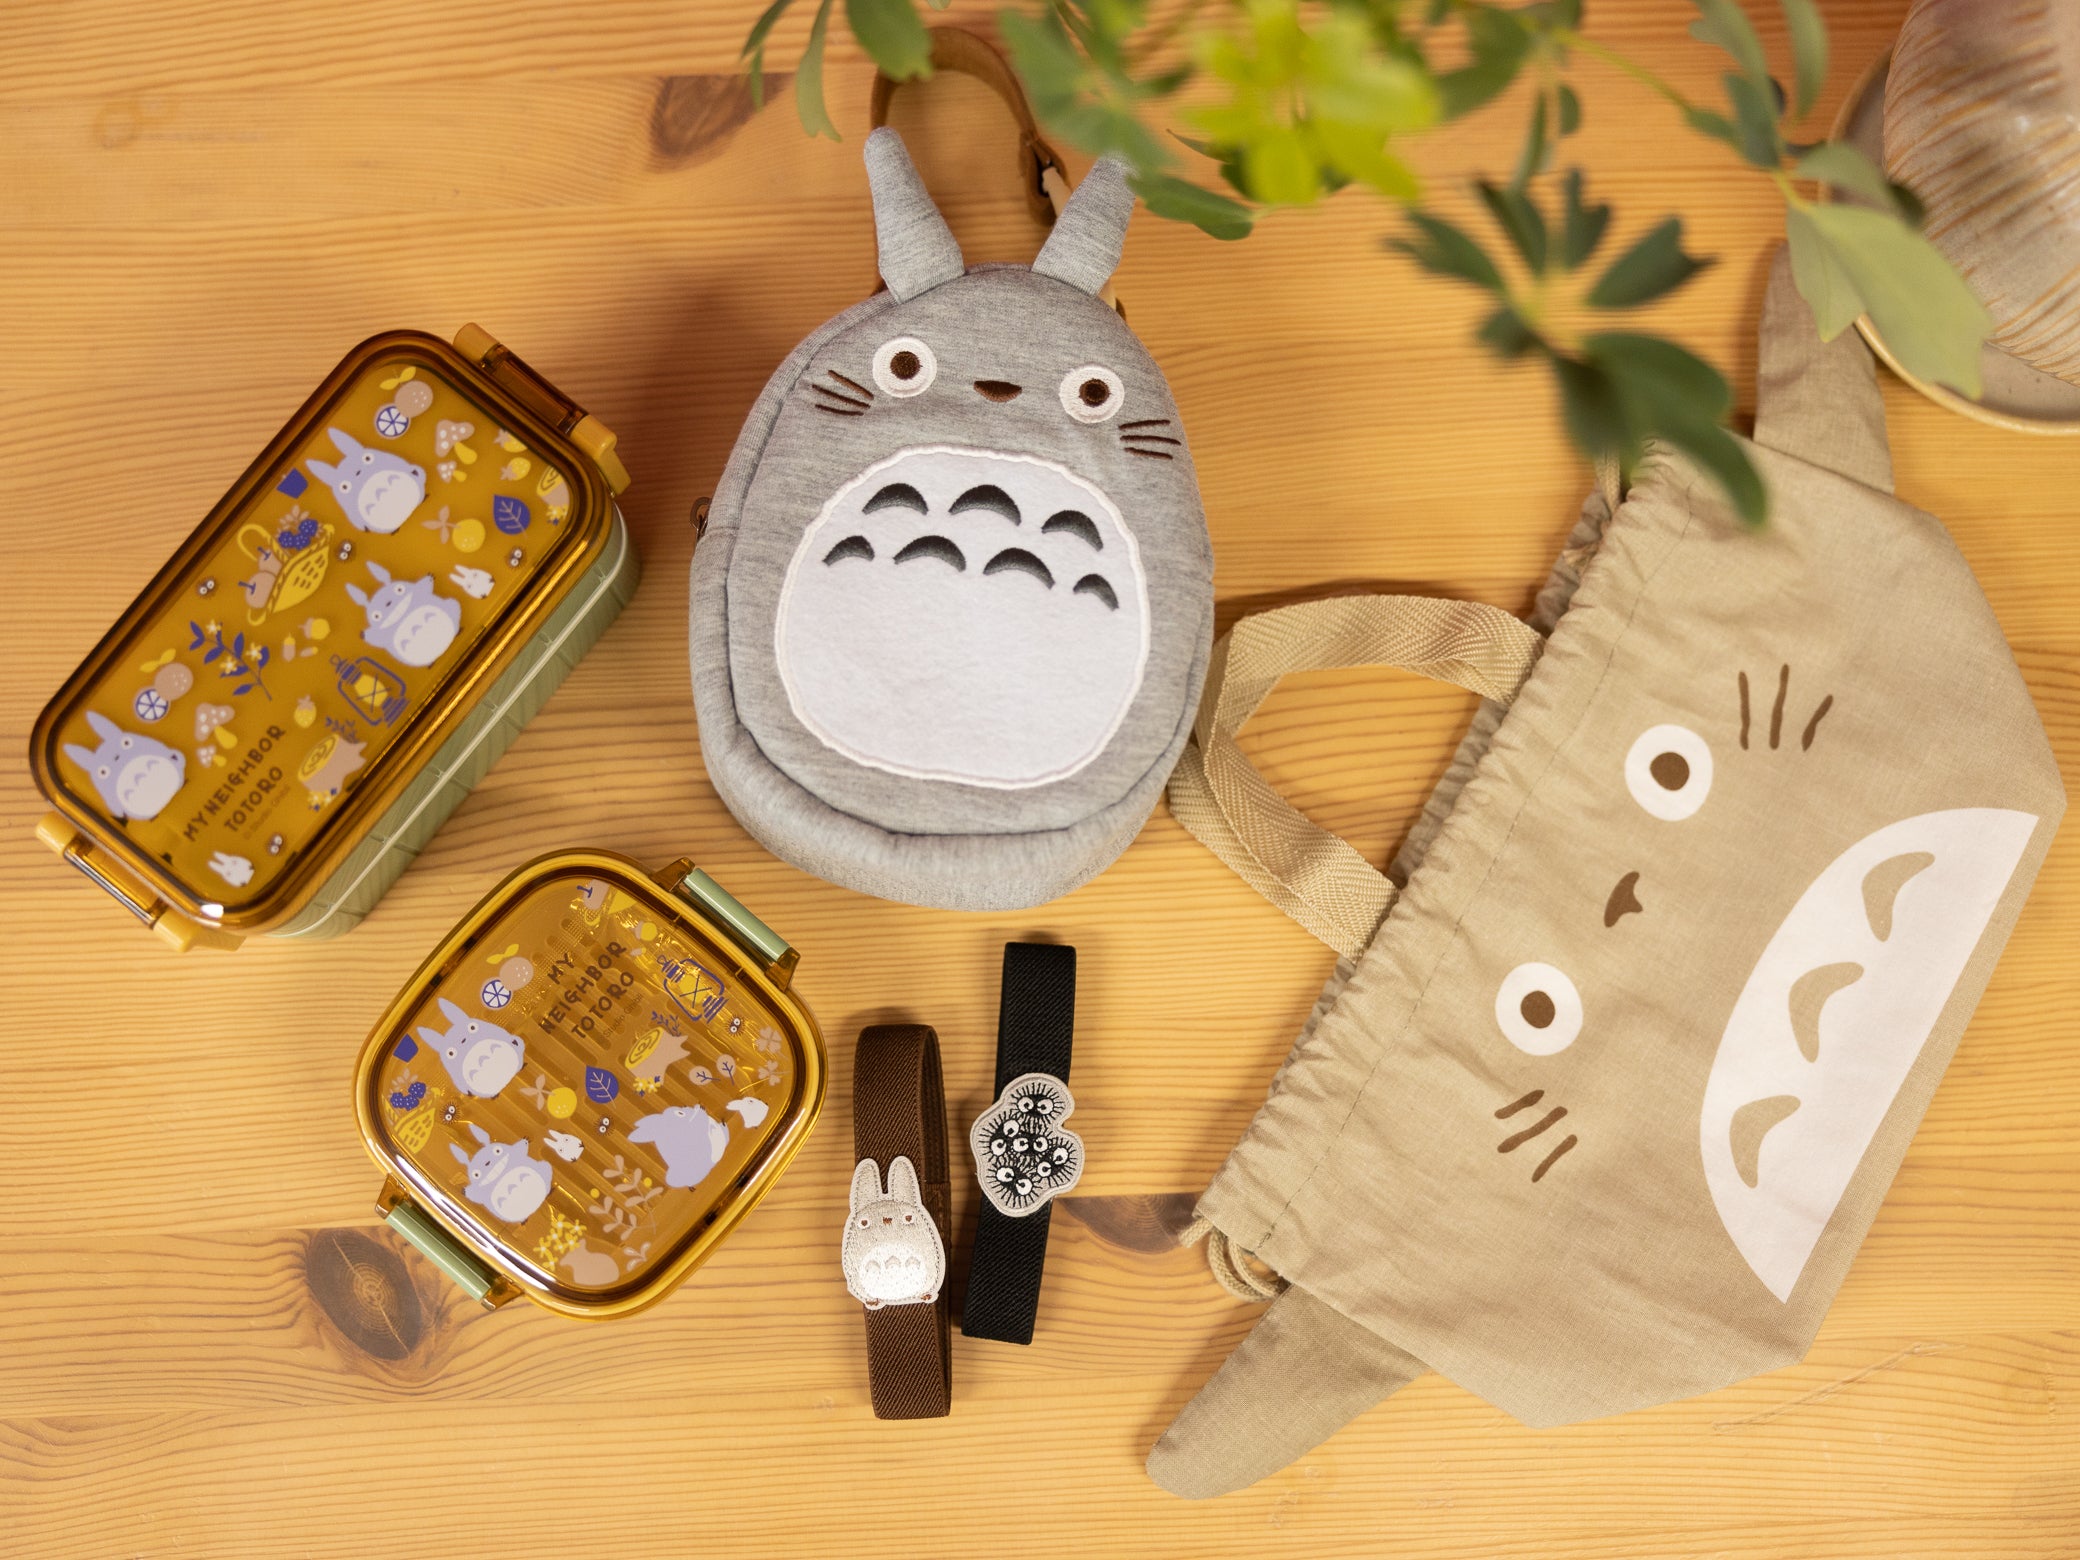 Bolsa Bento con cordón Totoro